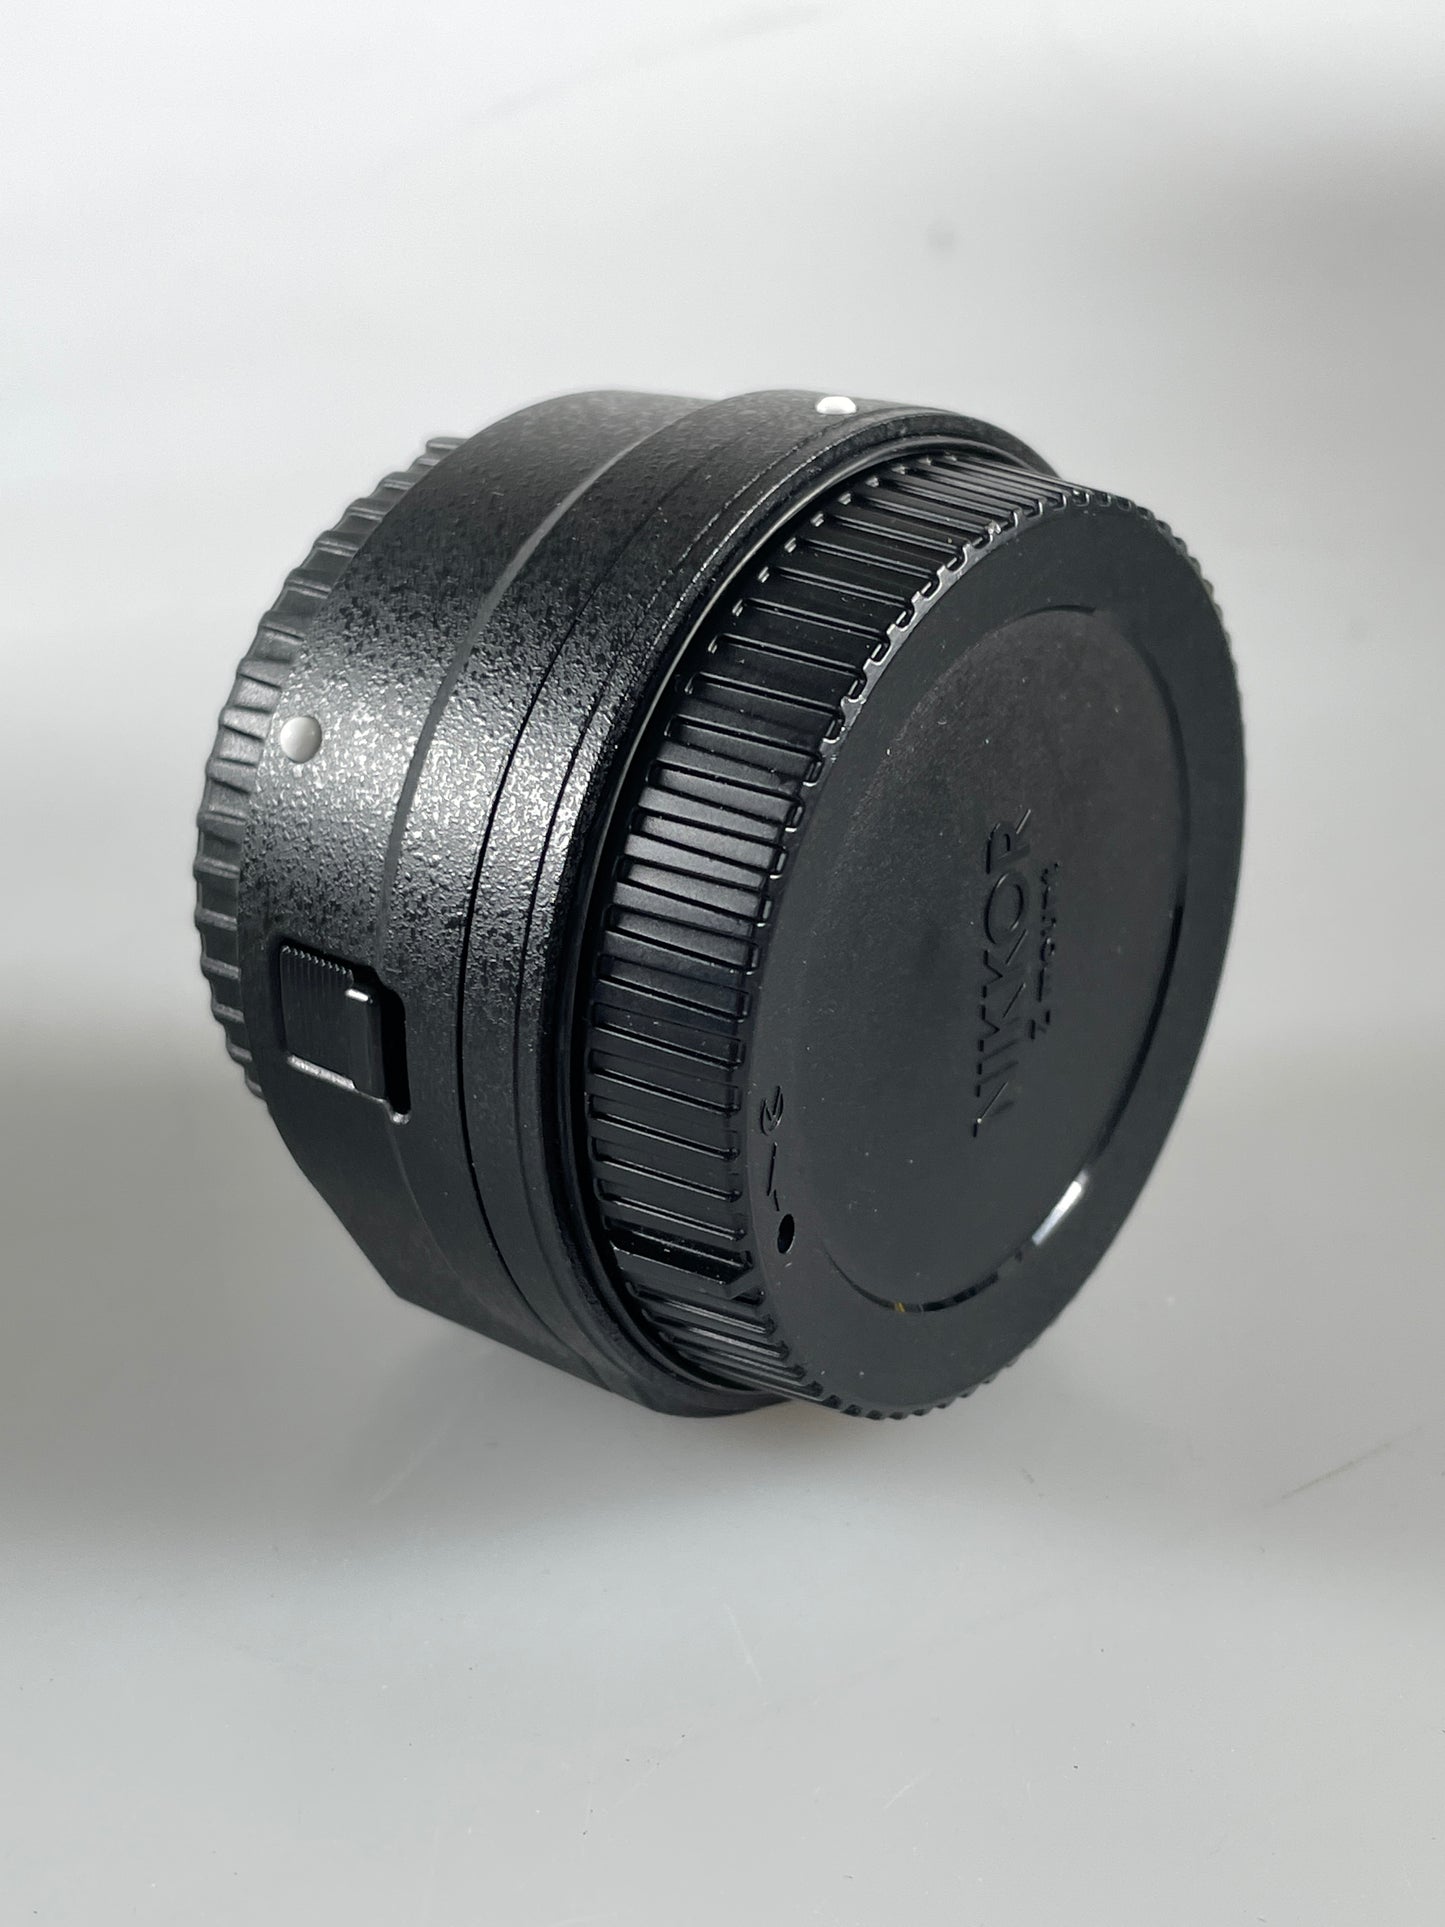 Nikon FTZ II mount adapter (F mount to Z mount adapter)